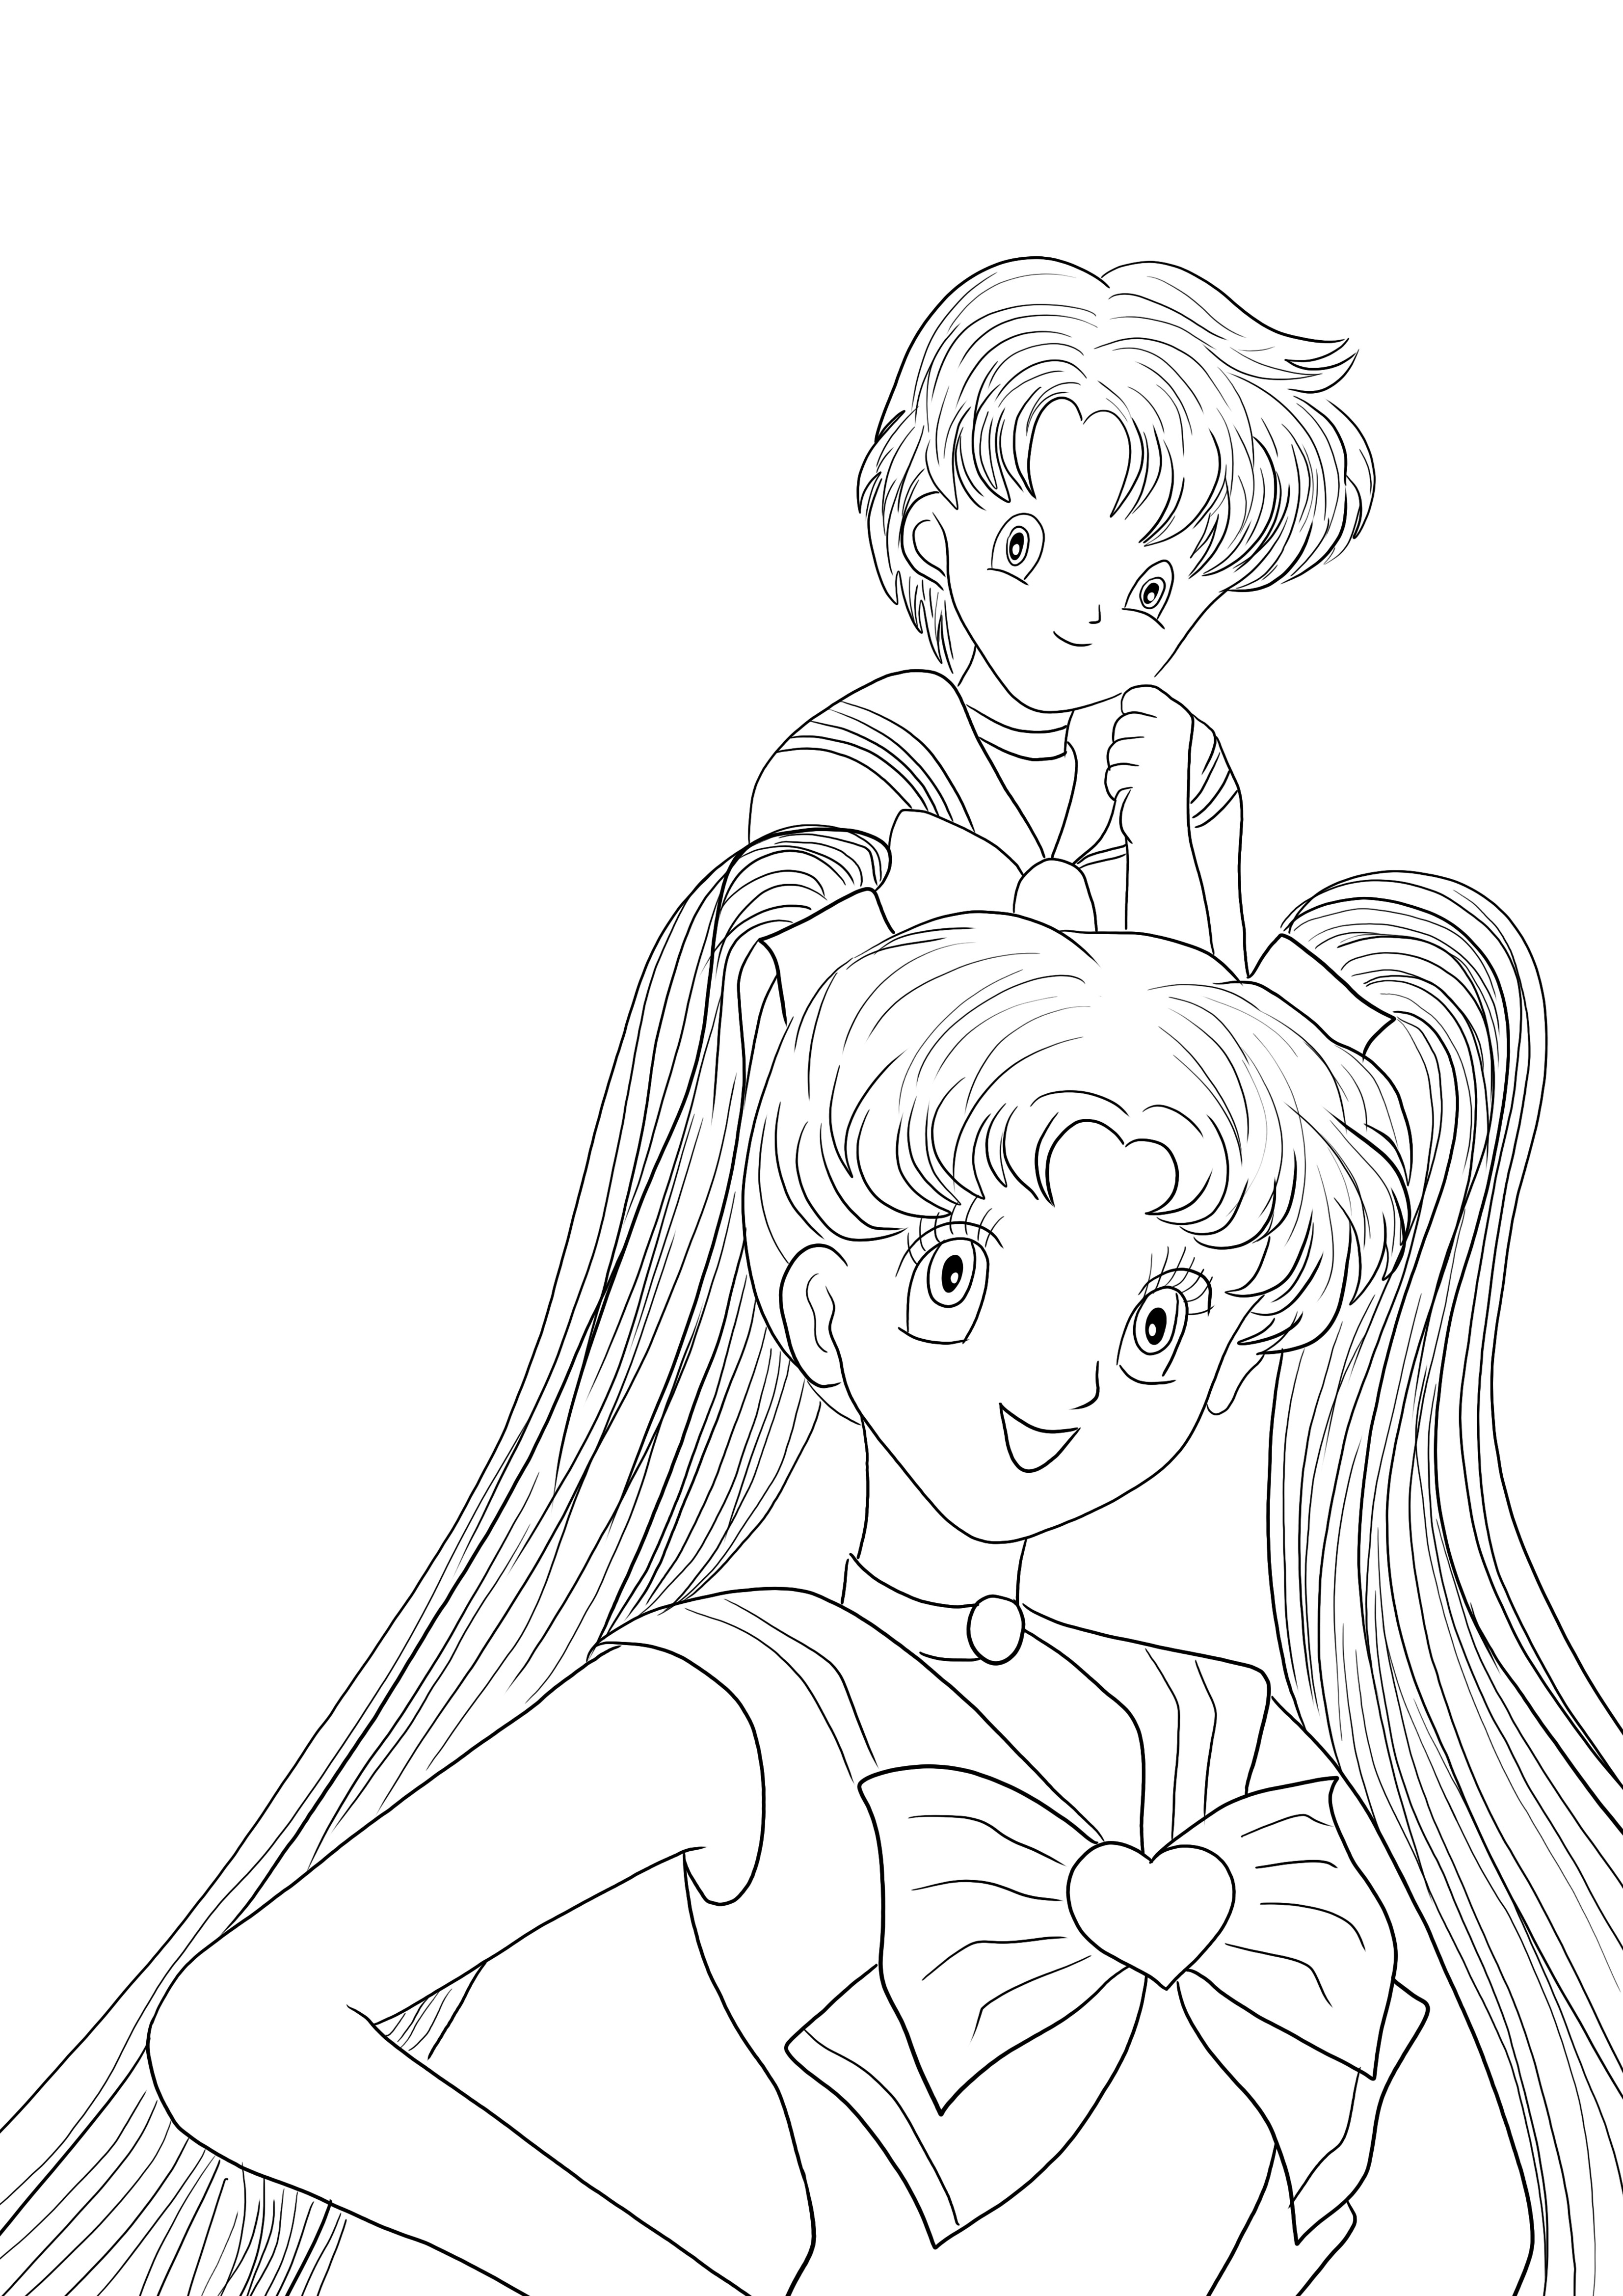 İşte çocuklar tarafından boyamak için ücretsiz olarak indirilebilen Sailor Moon Girls boyama sayfası